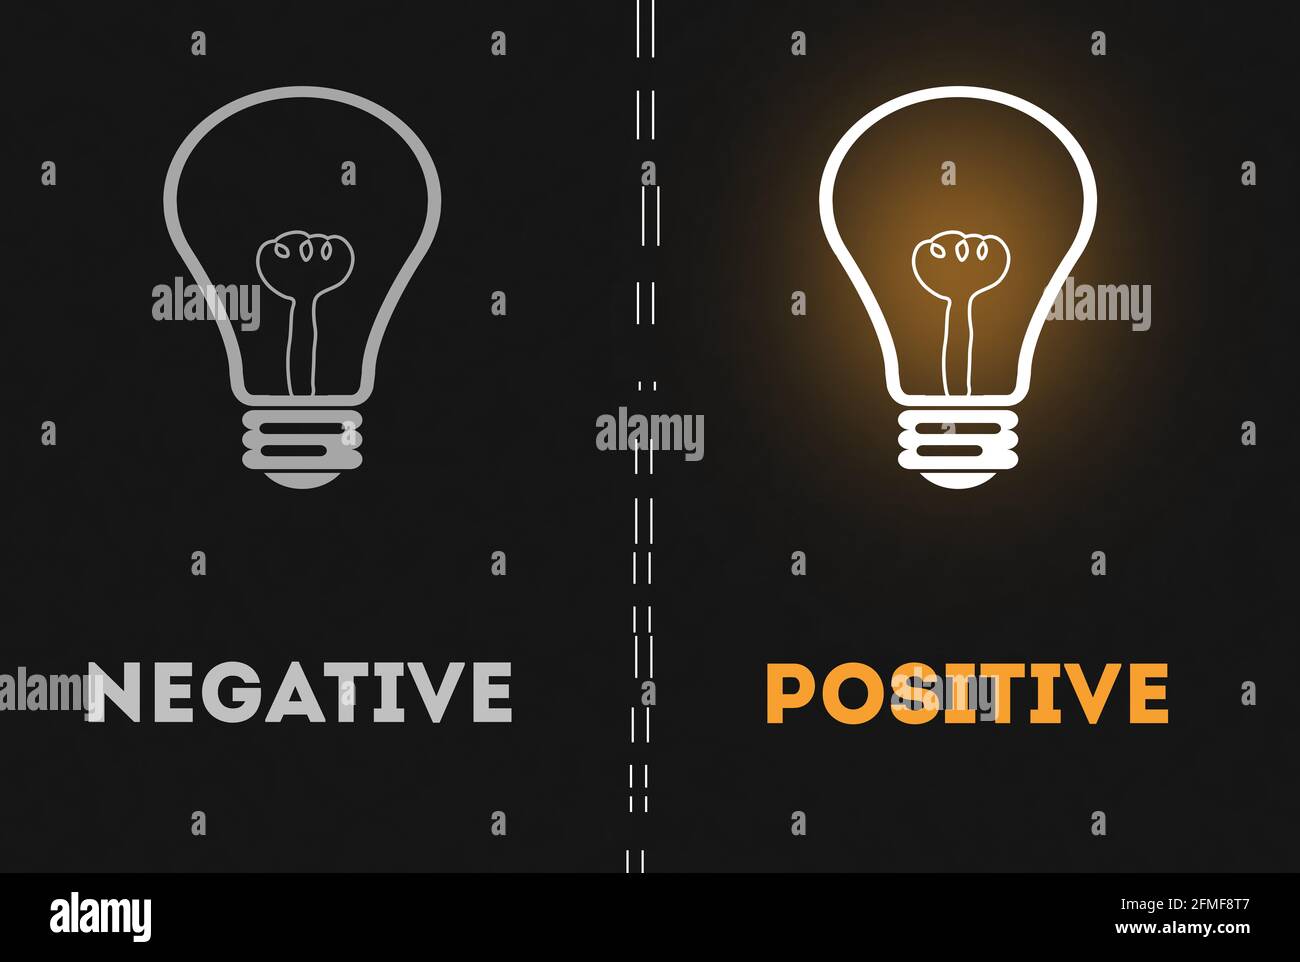 Réflexion négative vs réflexion positive concept d'ampoule de lumière. Fond sombre Banque D'Images